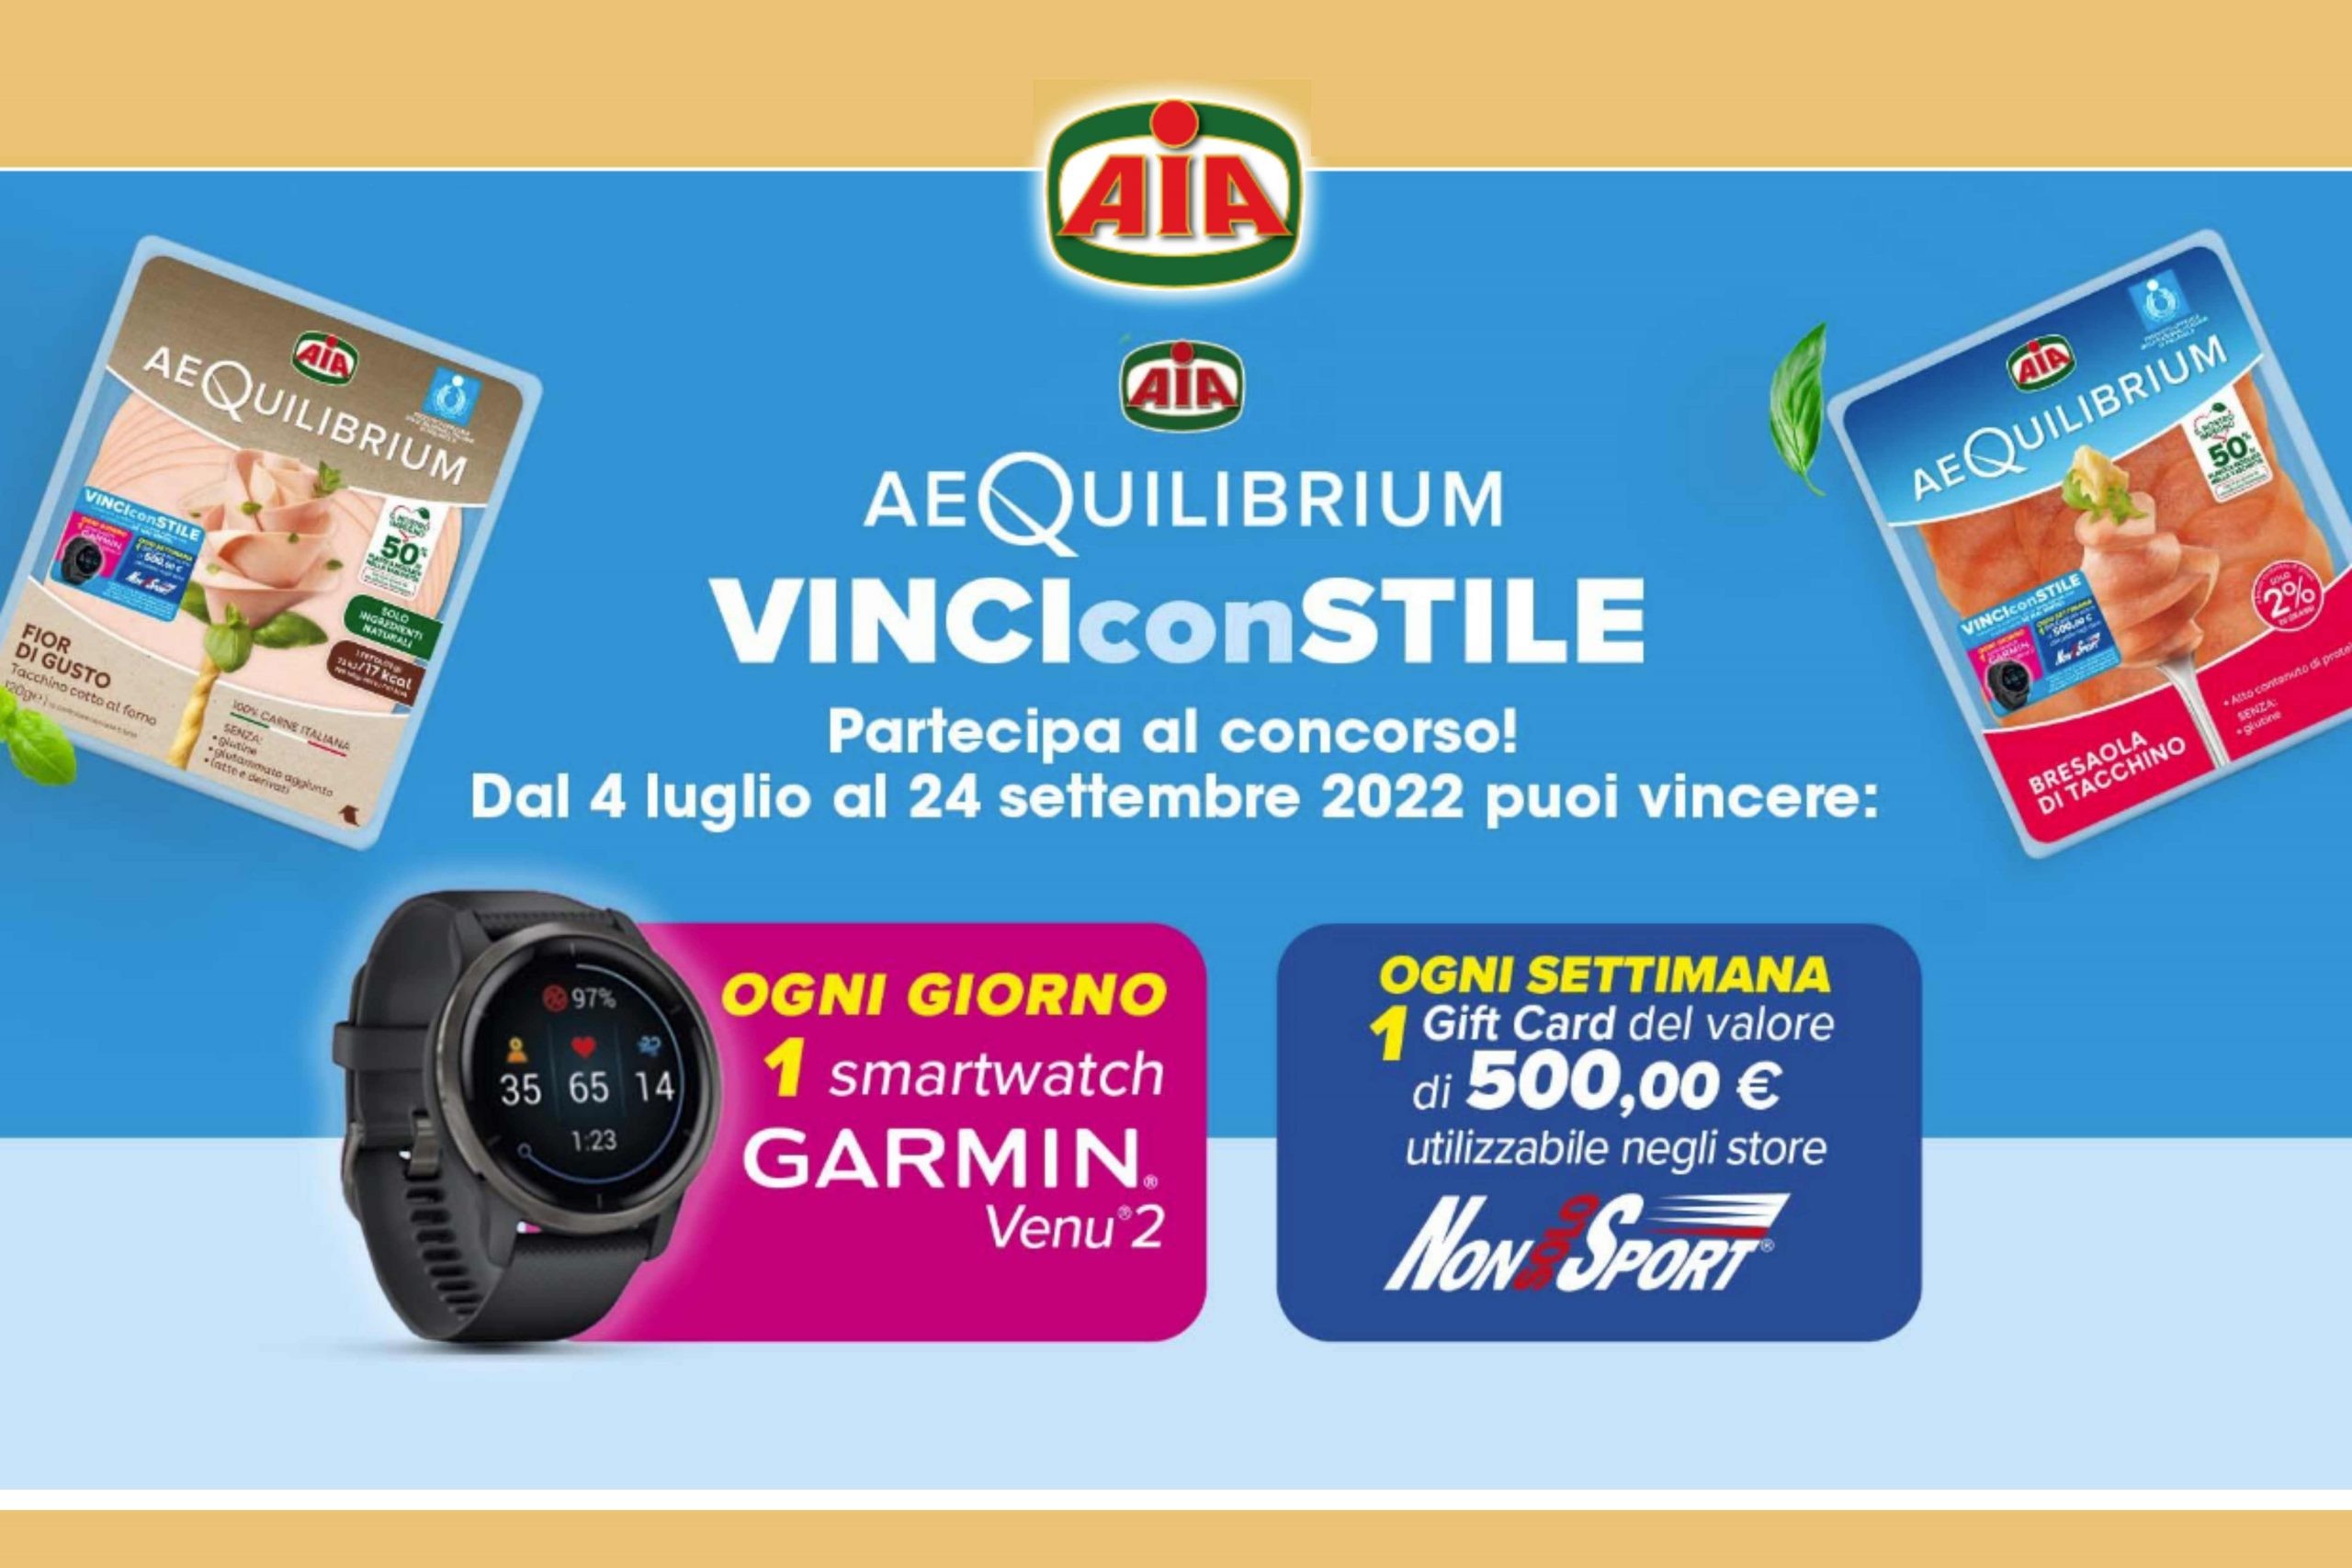 Concorso Aia AeQuilibirum “Vinci Con Stile”: come vincere un Garmin Venu 2 e gift card NonSoloSport da 500€